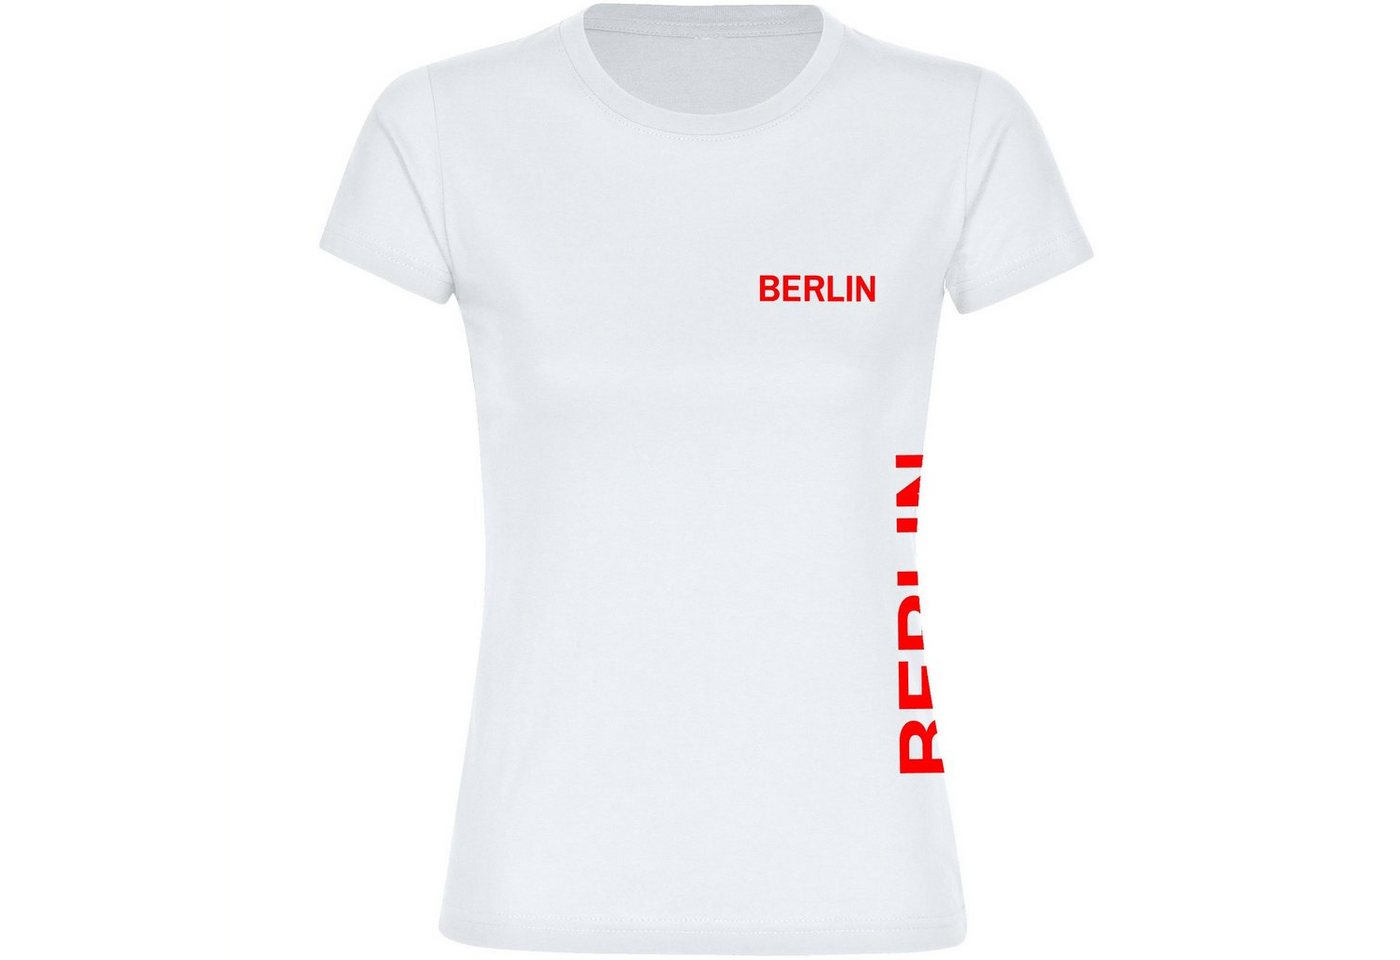 multifanshop T-Shirt Damen Berlin rot - Brust & Seite - Frauen von multifanshop